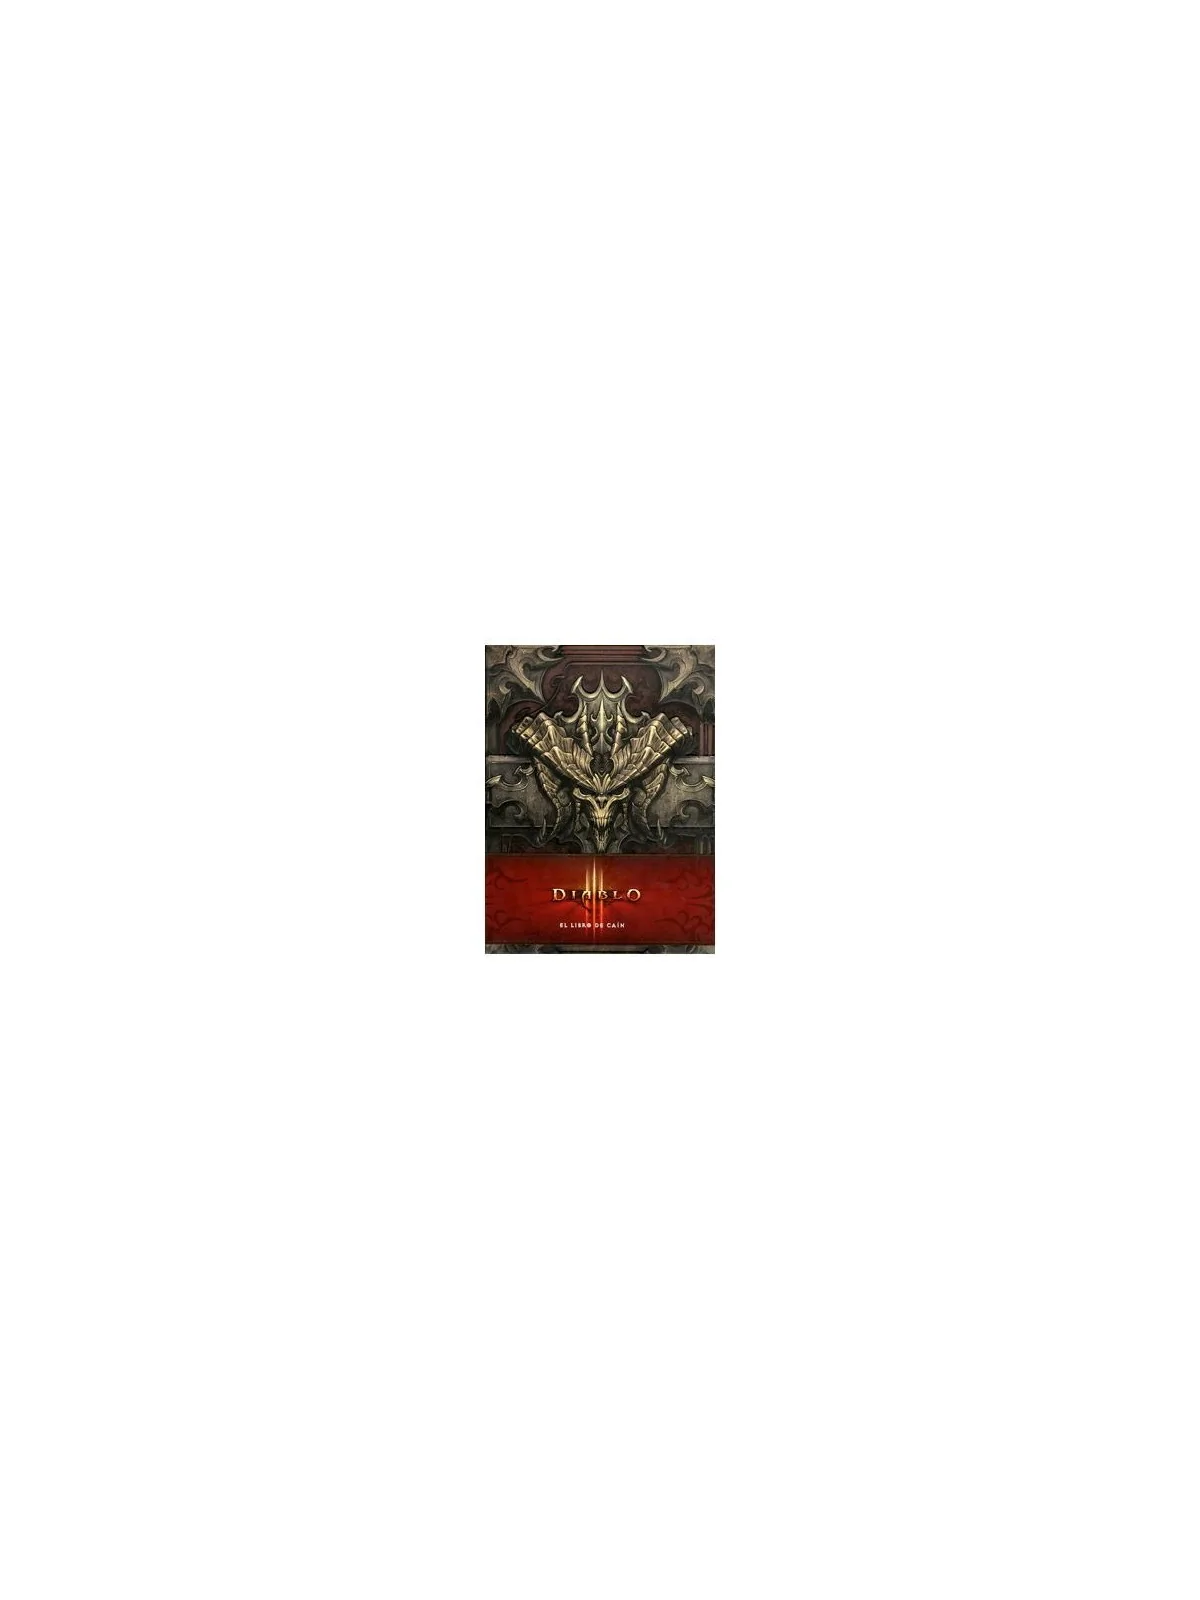 Comprar Diablo III: Libro de Cain (Novela) barato al mejor precio 28,4